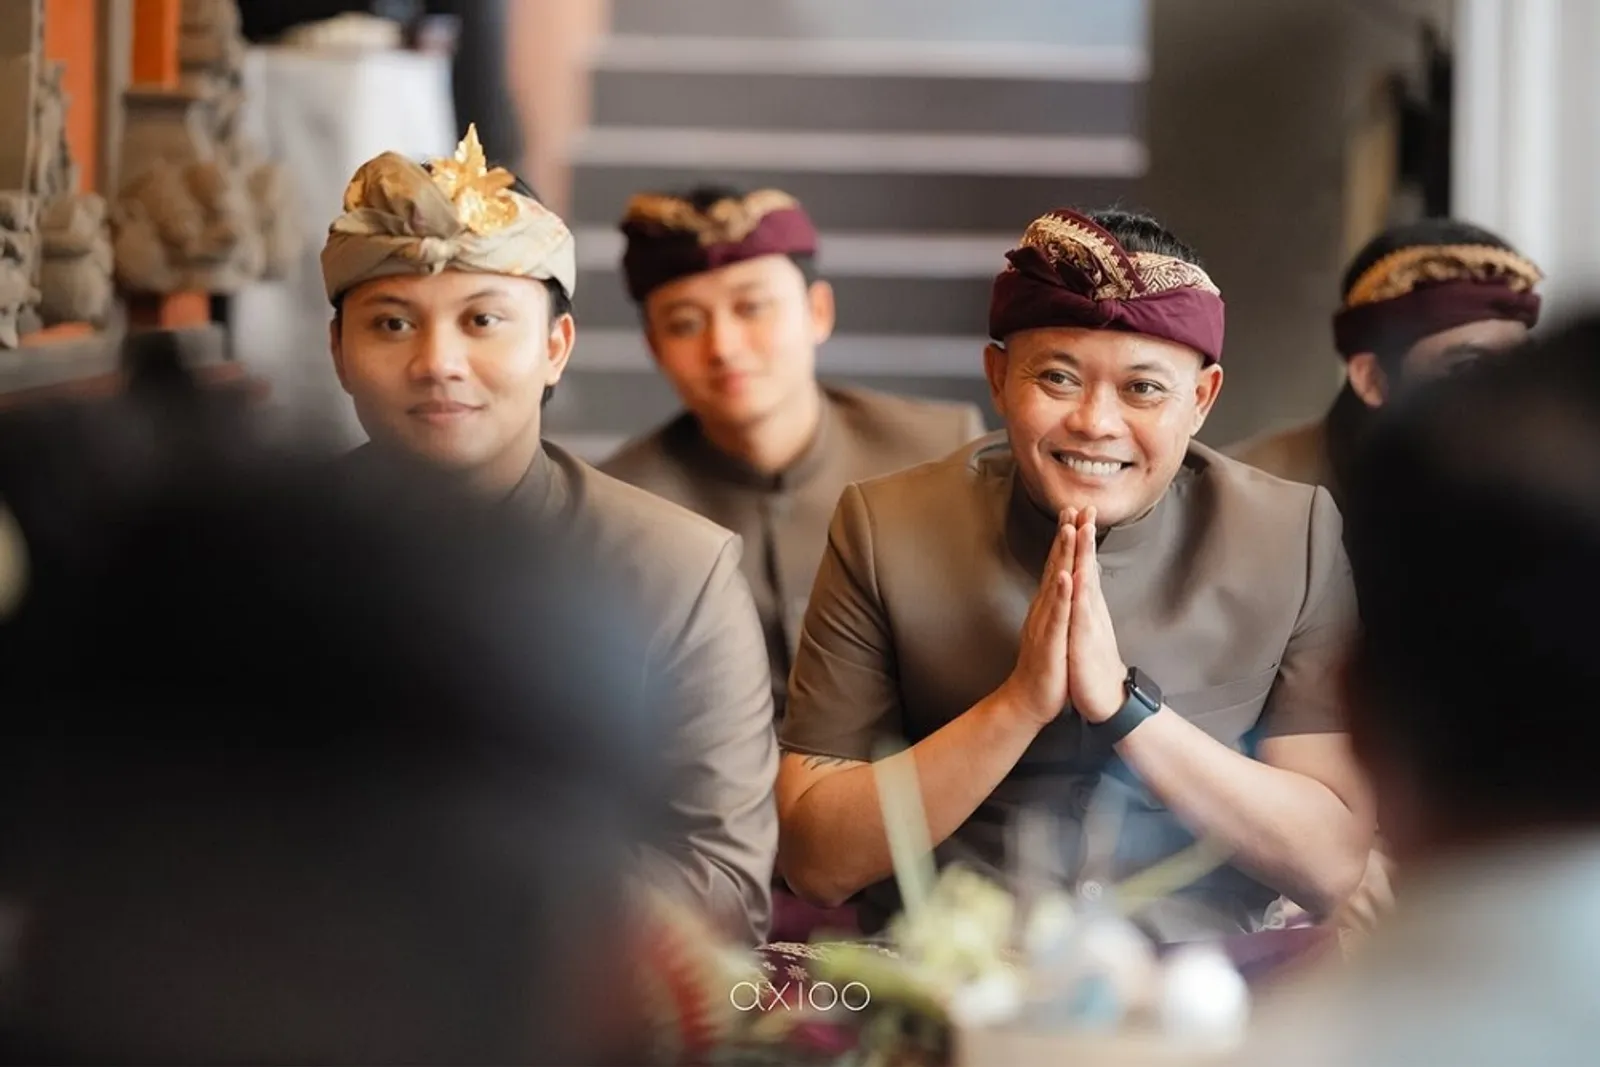 5 Fakta Upacara Adat Bali Rizky Febian dan Mahalini Jelang Pernikahan